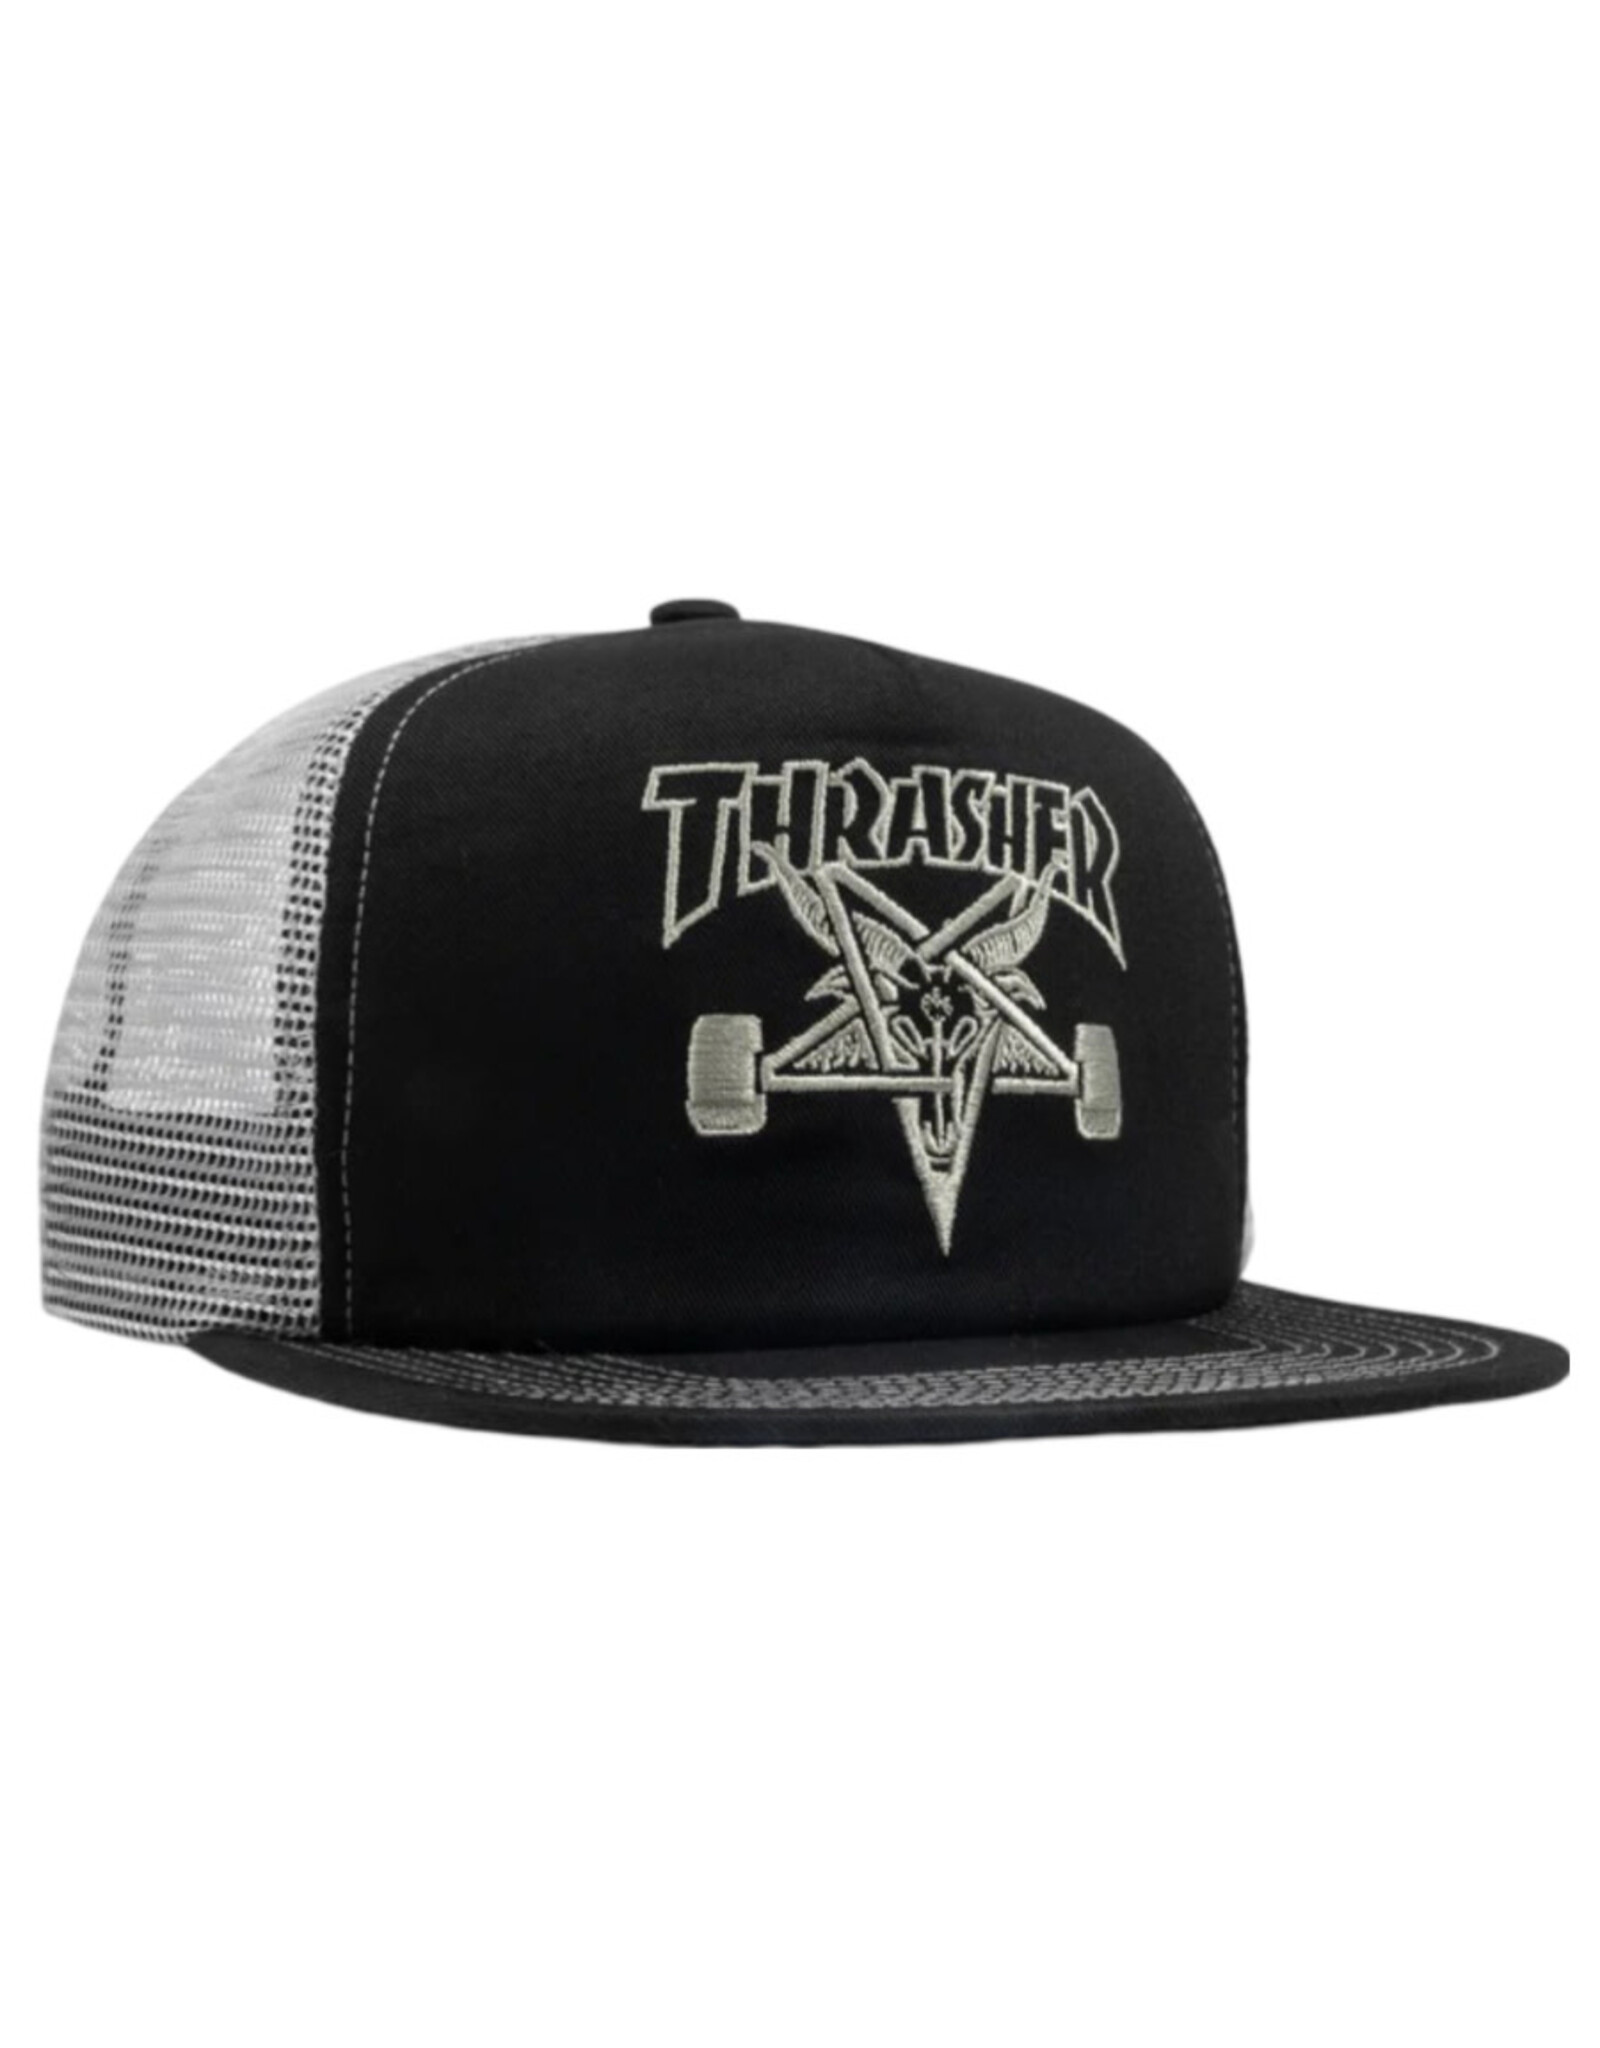 Thrasher Thrasher Hat Sk8 Goat Mesh Snapback (Black/Grey)